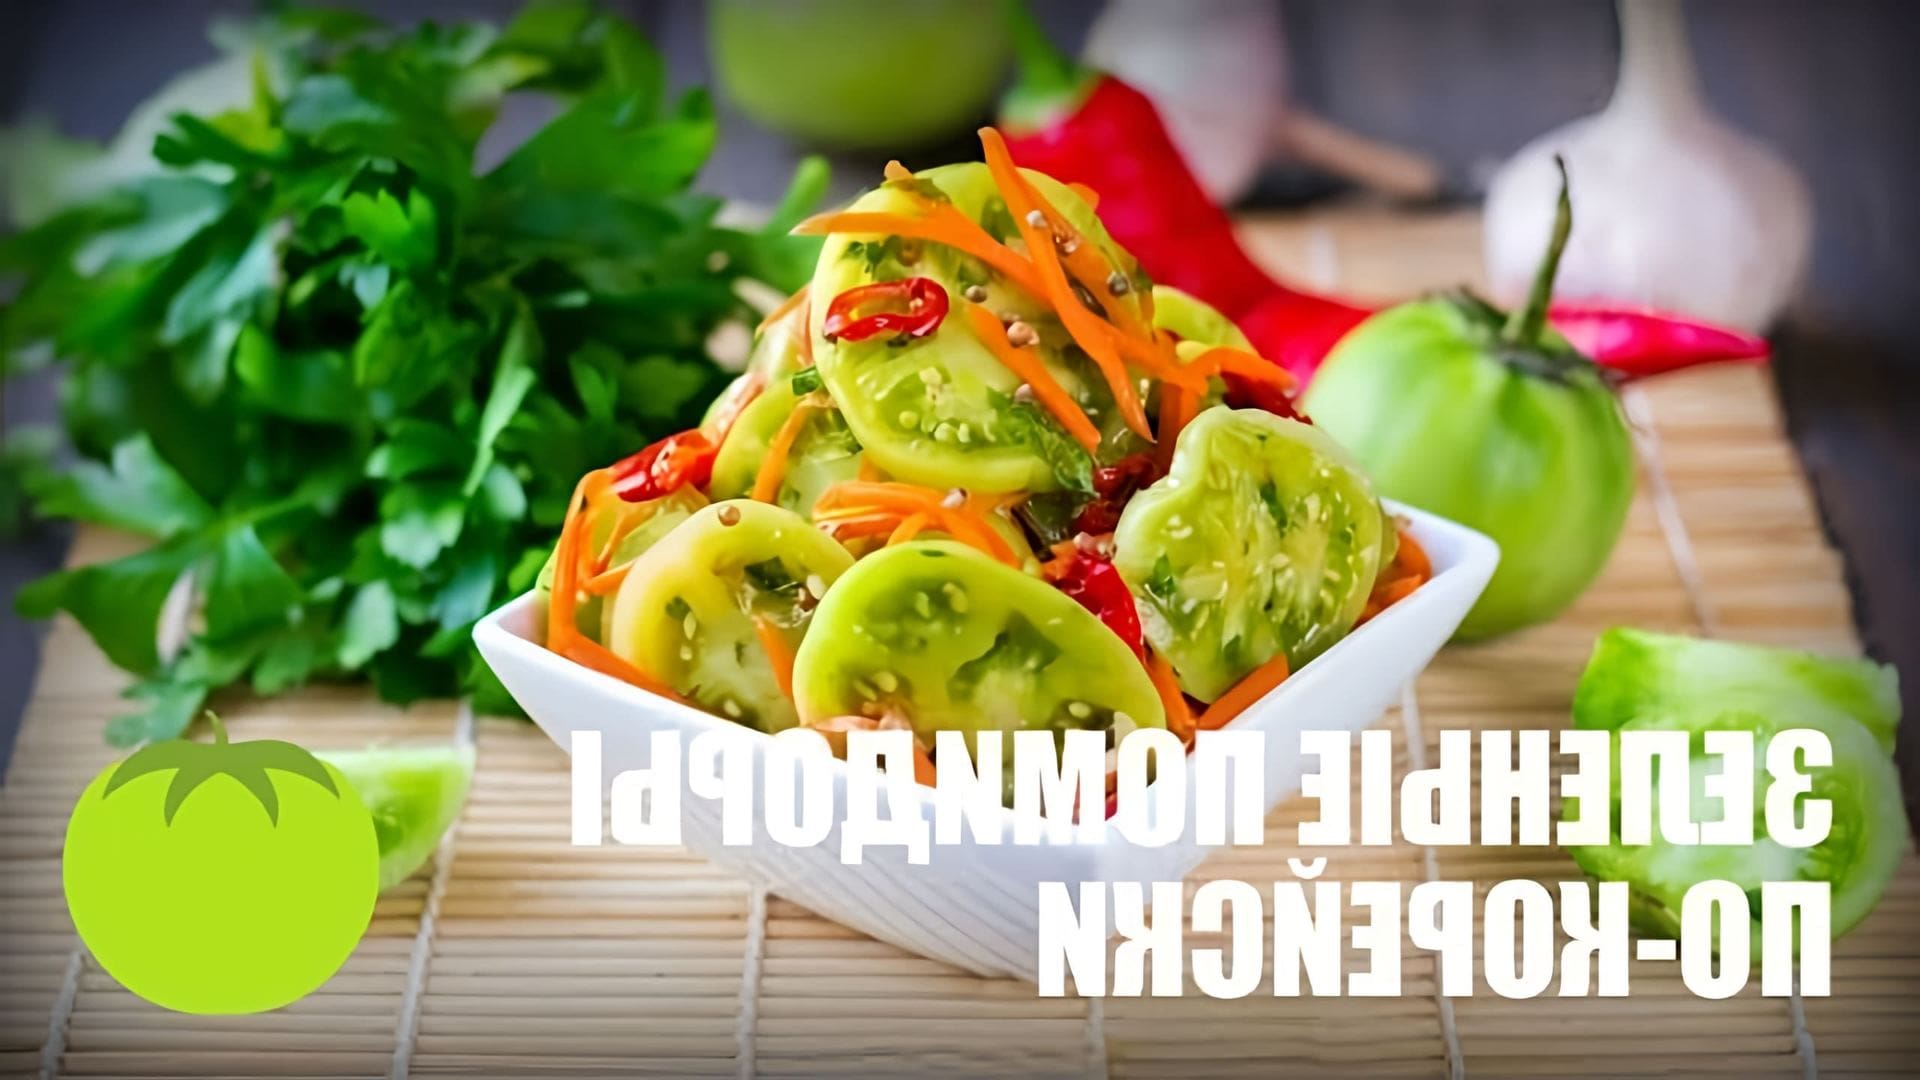 В этом видео демонстрируется рецепт приготовления зеленых помидоров по-корейски